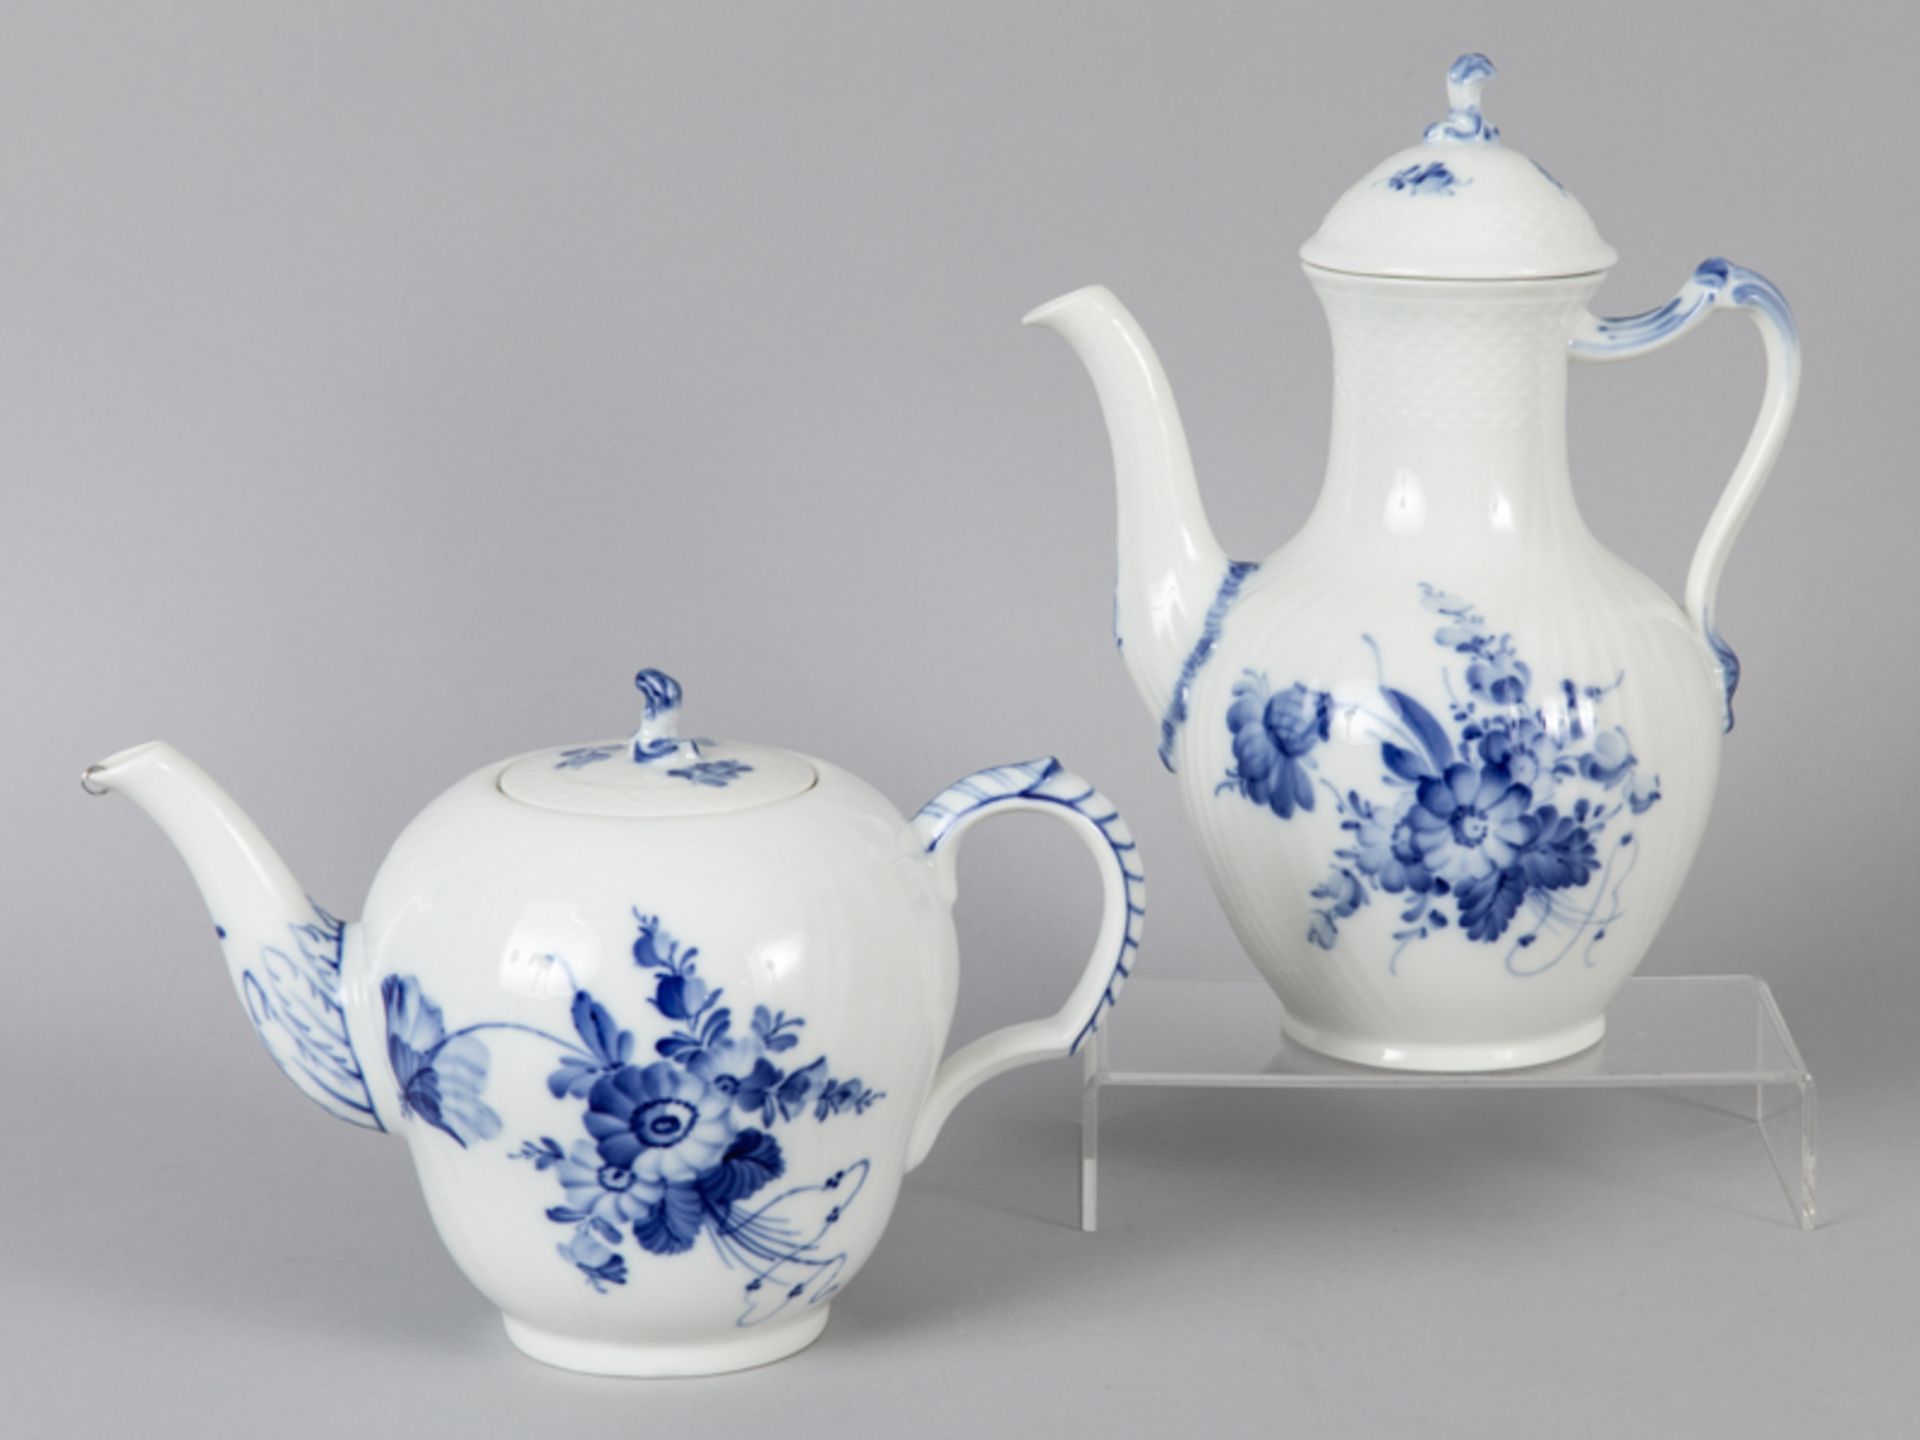 GroÃŸe Teekanne und Kaffeekanne, "Blaue Blume", Royal Copenhagen, 20. Jh. brWeiÃŸporzellan mit unter